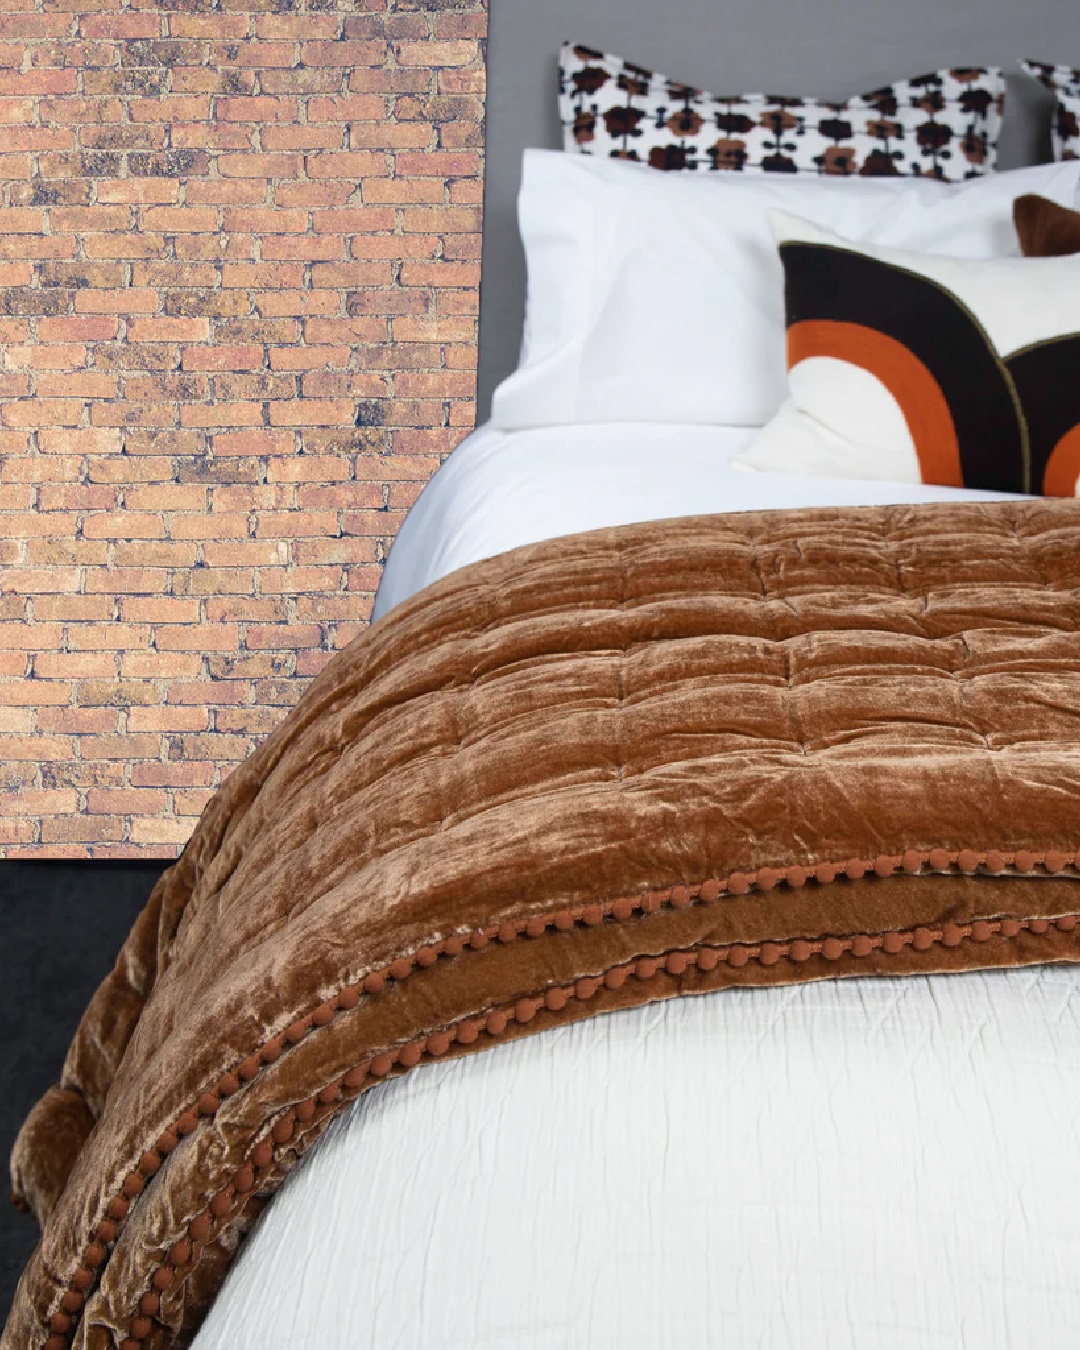 Rusty velvet comforter on white bed